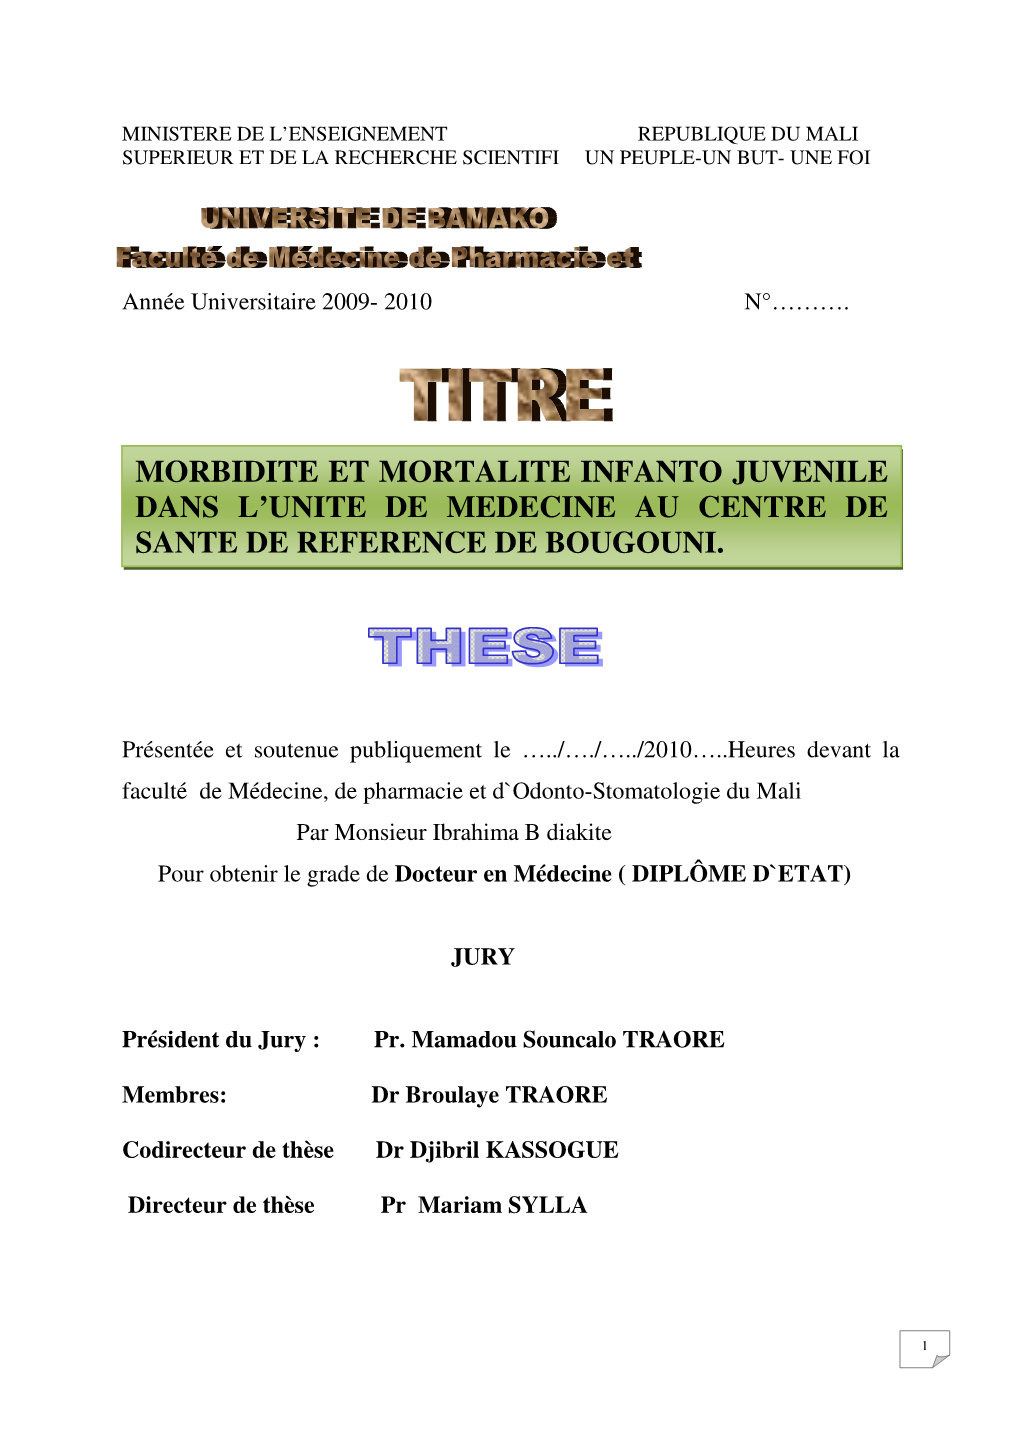 Morbidite Et Mortalite Infanto Juvenile Dans L’Unite De Medecine Au Centre De Sante De Reference De Bougouni